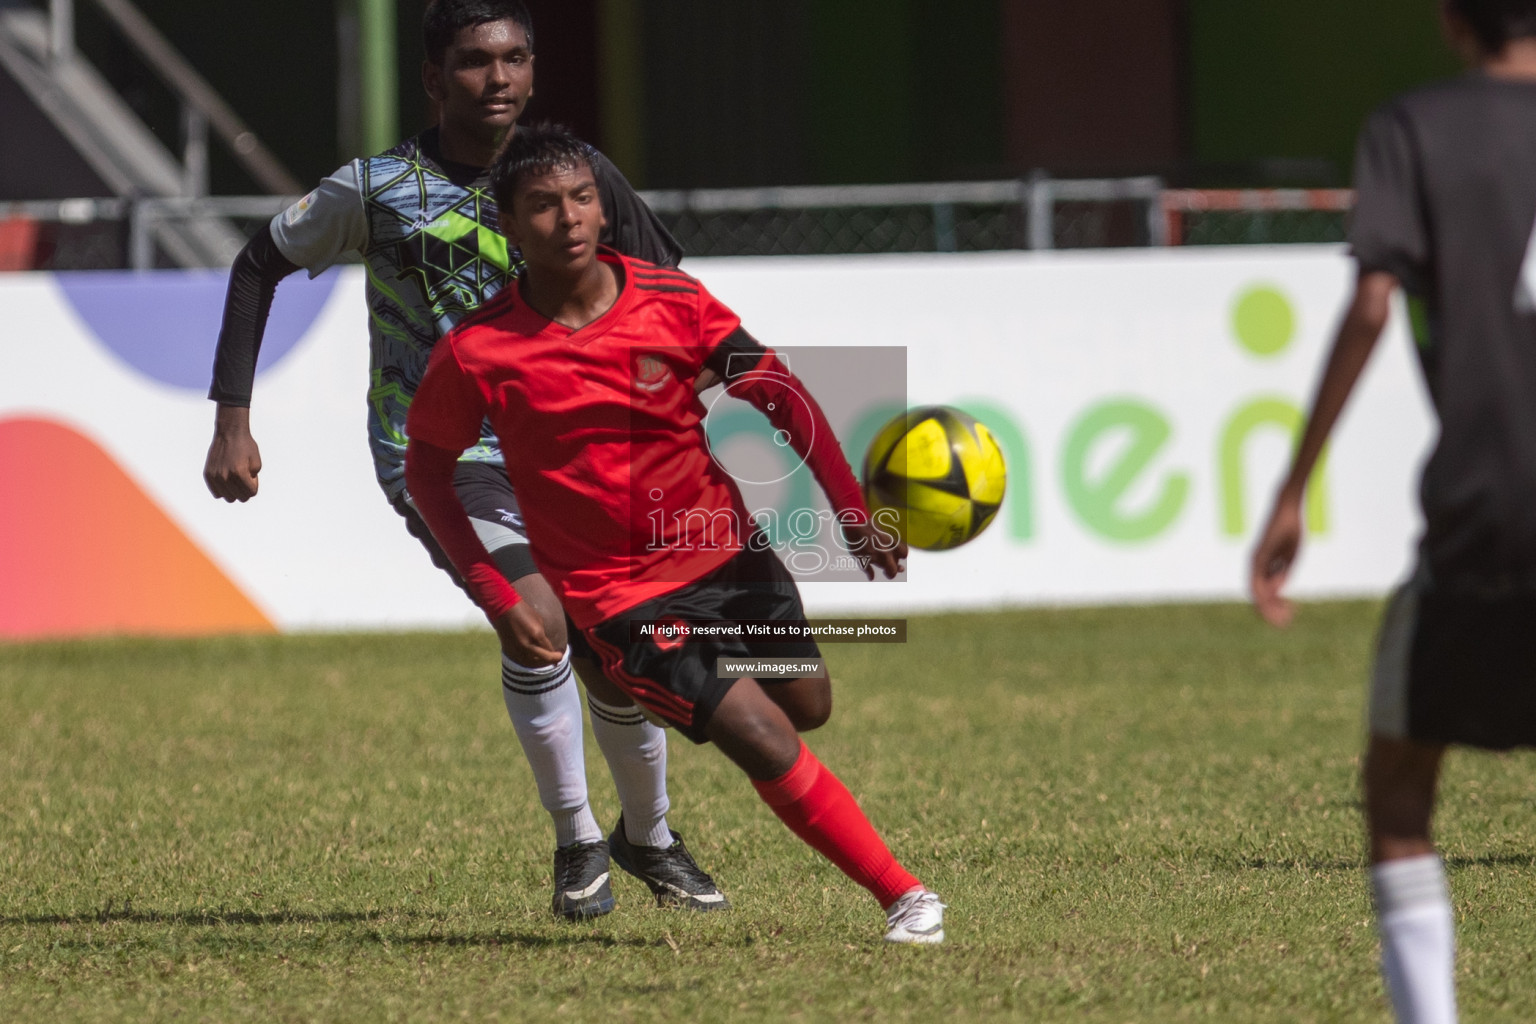 Majeedhiyya School vs Ahmadhiyya School in Mamen Inter-School Football Tournament 2019 (U15) on 9th March 2019, in Male' Maldives (Images.mv Photo: Suadh Abdul Sattar)